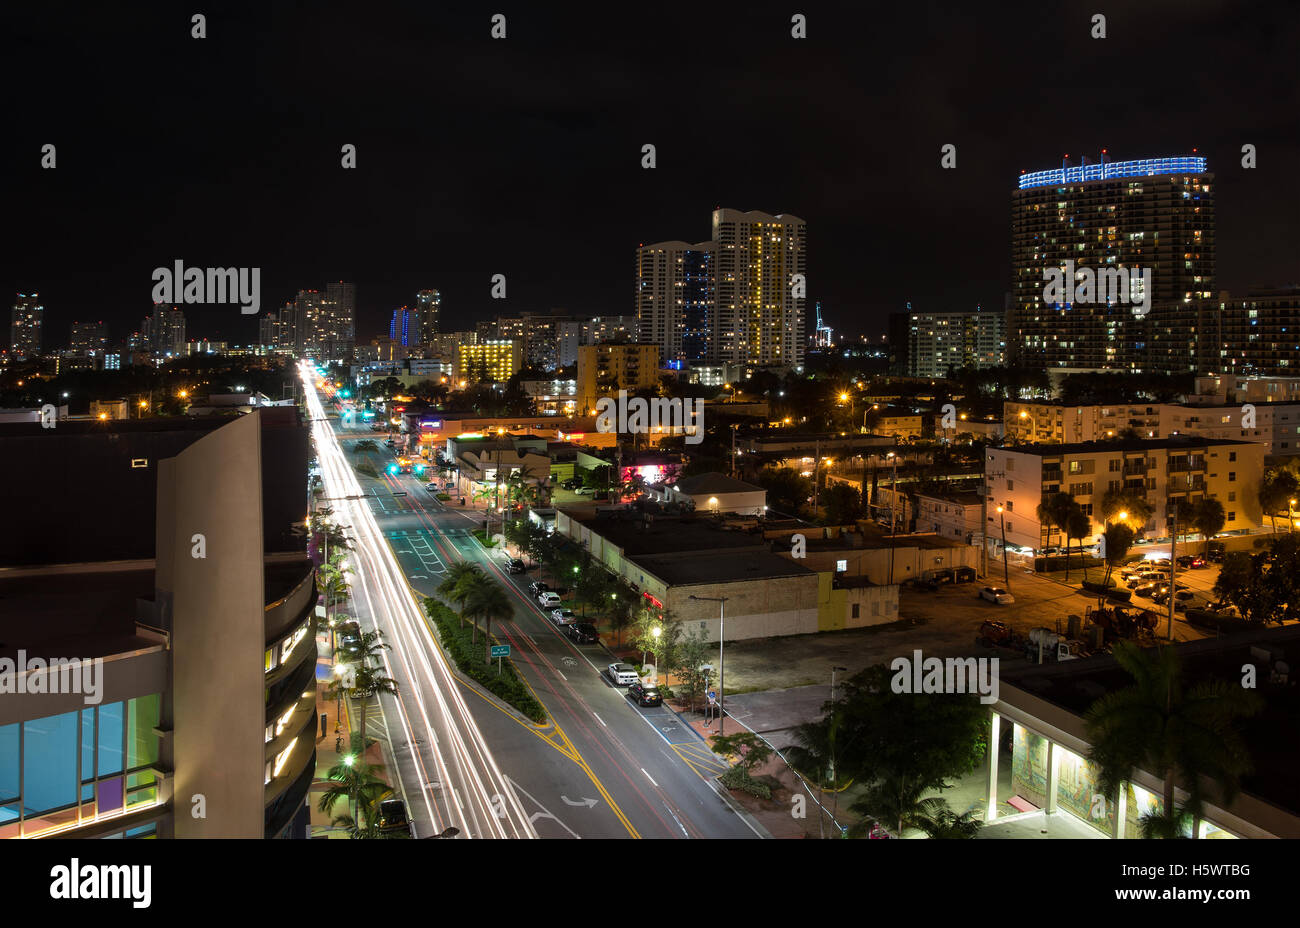 Exposition photo de nuit longue de chemin Alton à Miami Beach, en Floride, avec l'appareil photo fait au sud. Banque D'Images